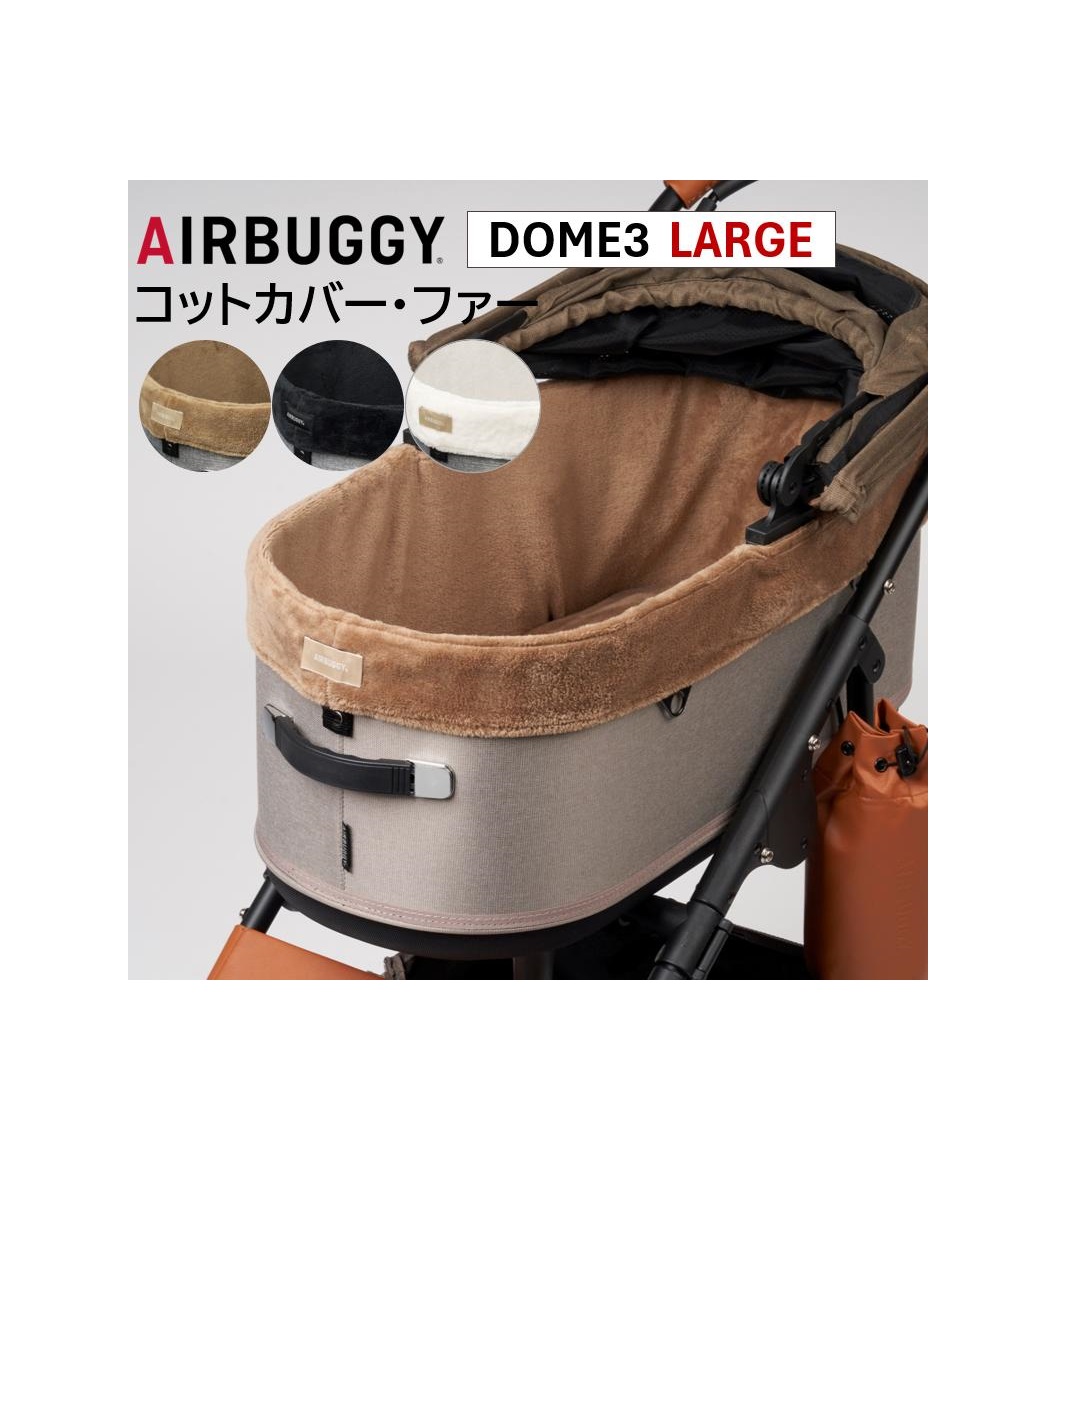 エアバギー DOME3専用 コットカバー ファー ラージ ペットカートドッグカート パーツ airbuggy cotcover for dogアイキャッチ画像